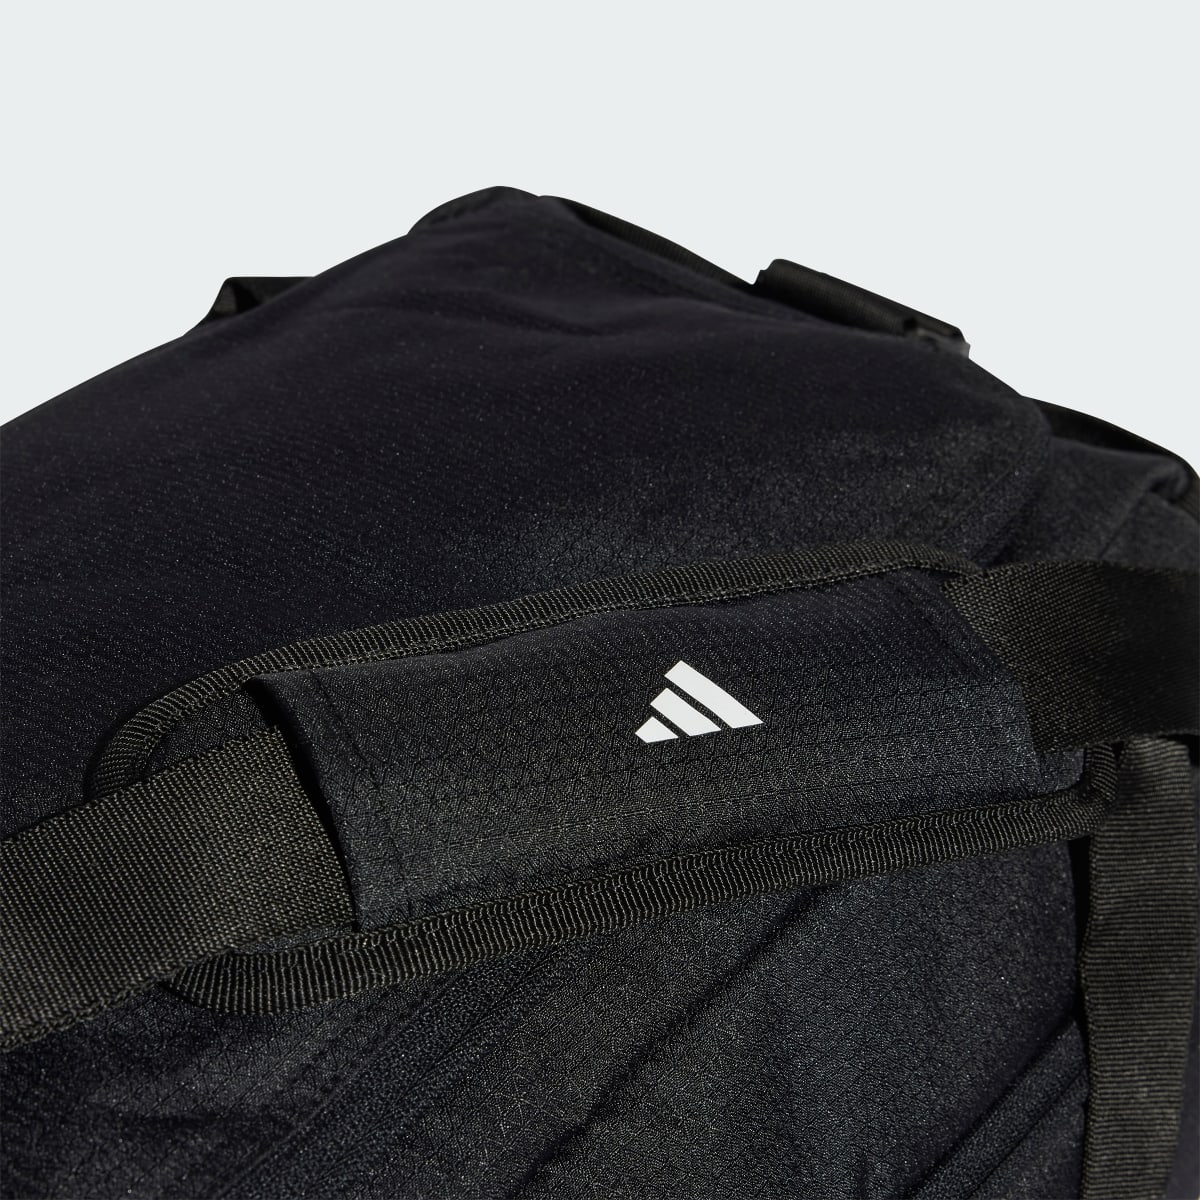 Adidas Essentials 3-Stripes Duffel Bag. 7